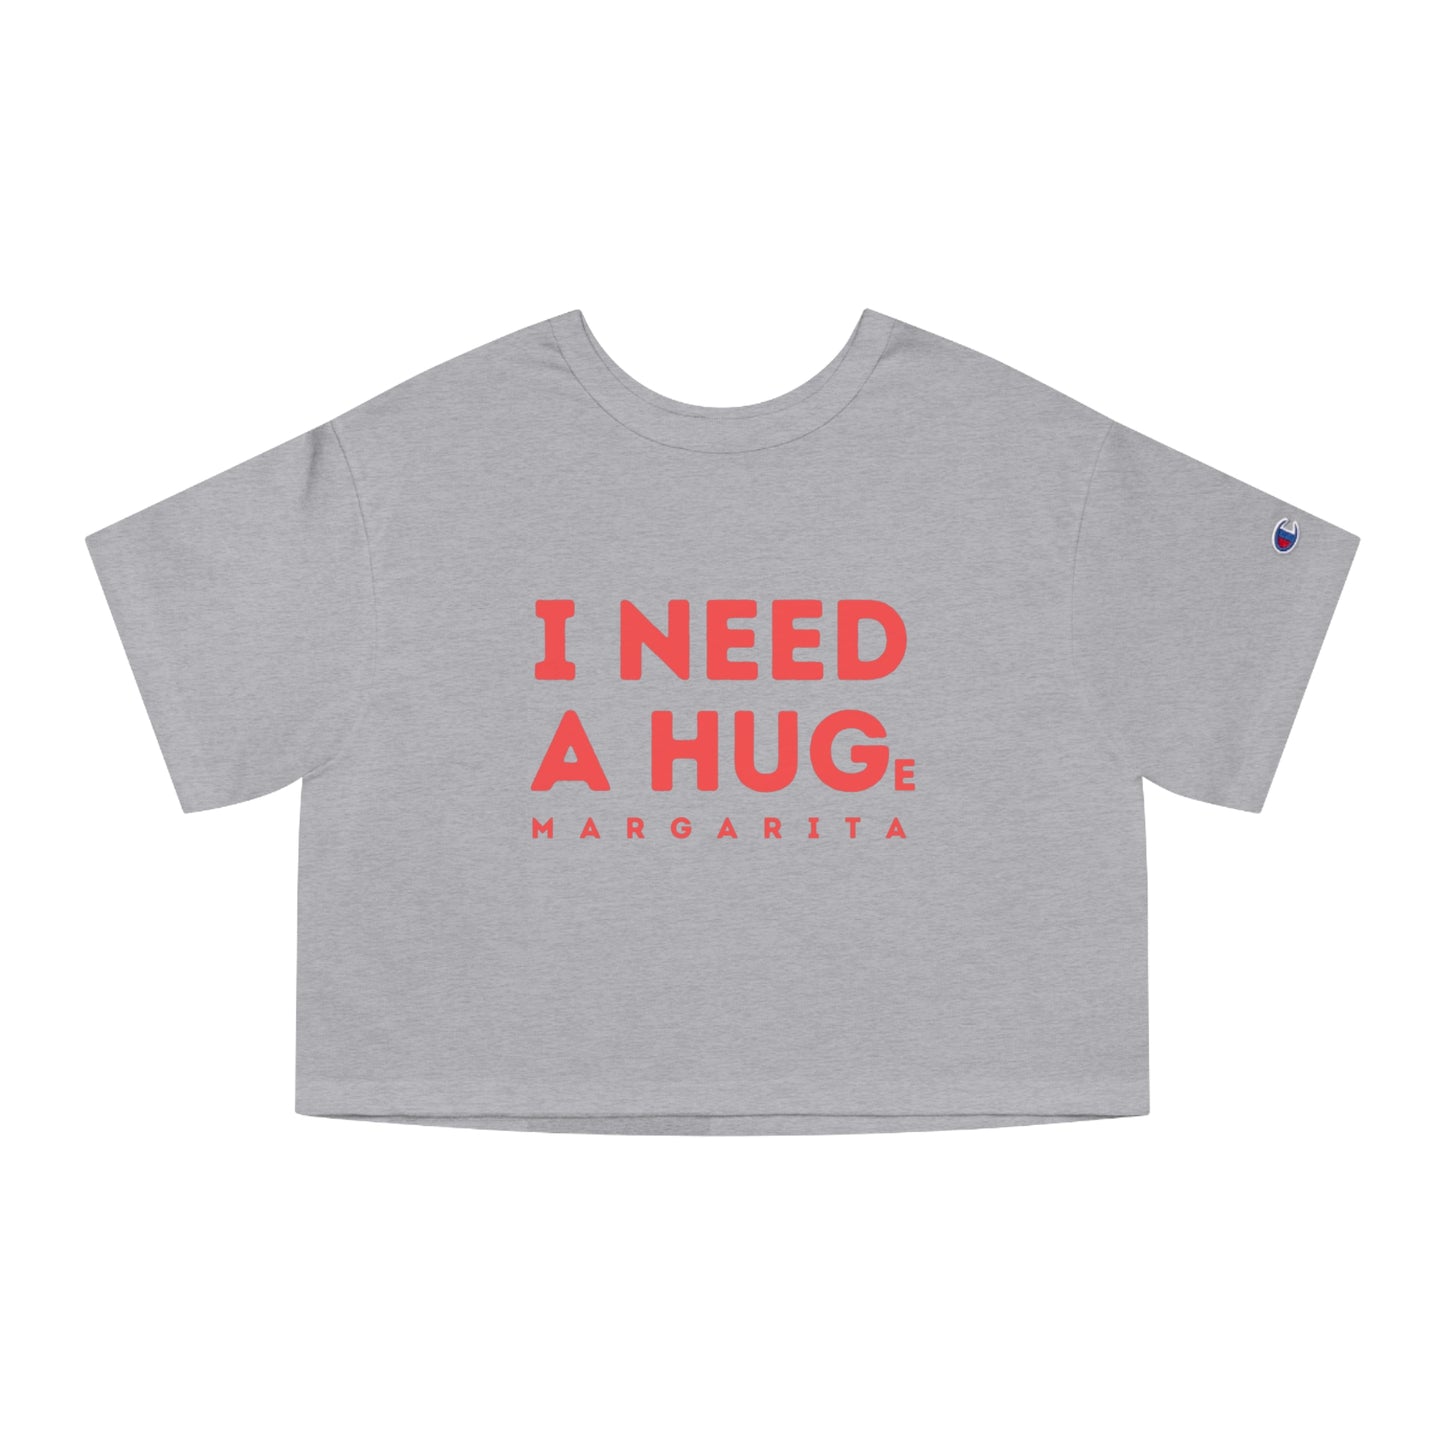 "I need a hug" - Champion crop top